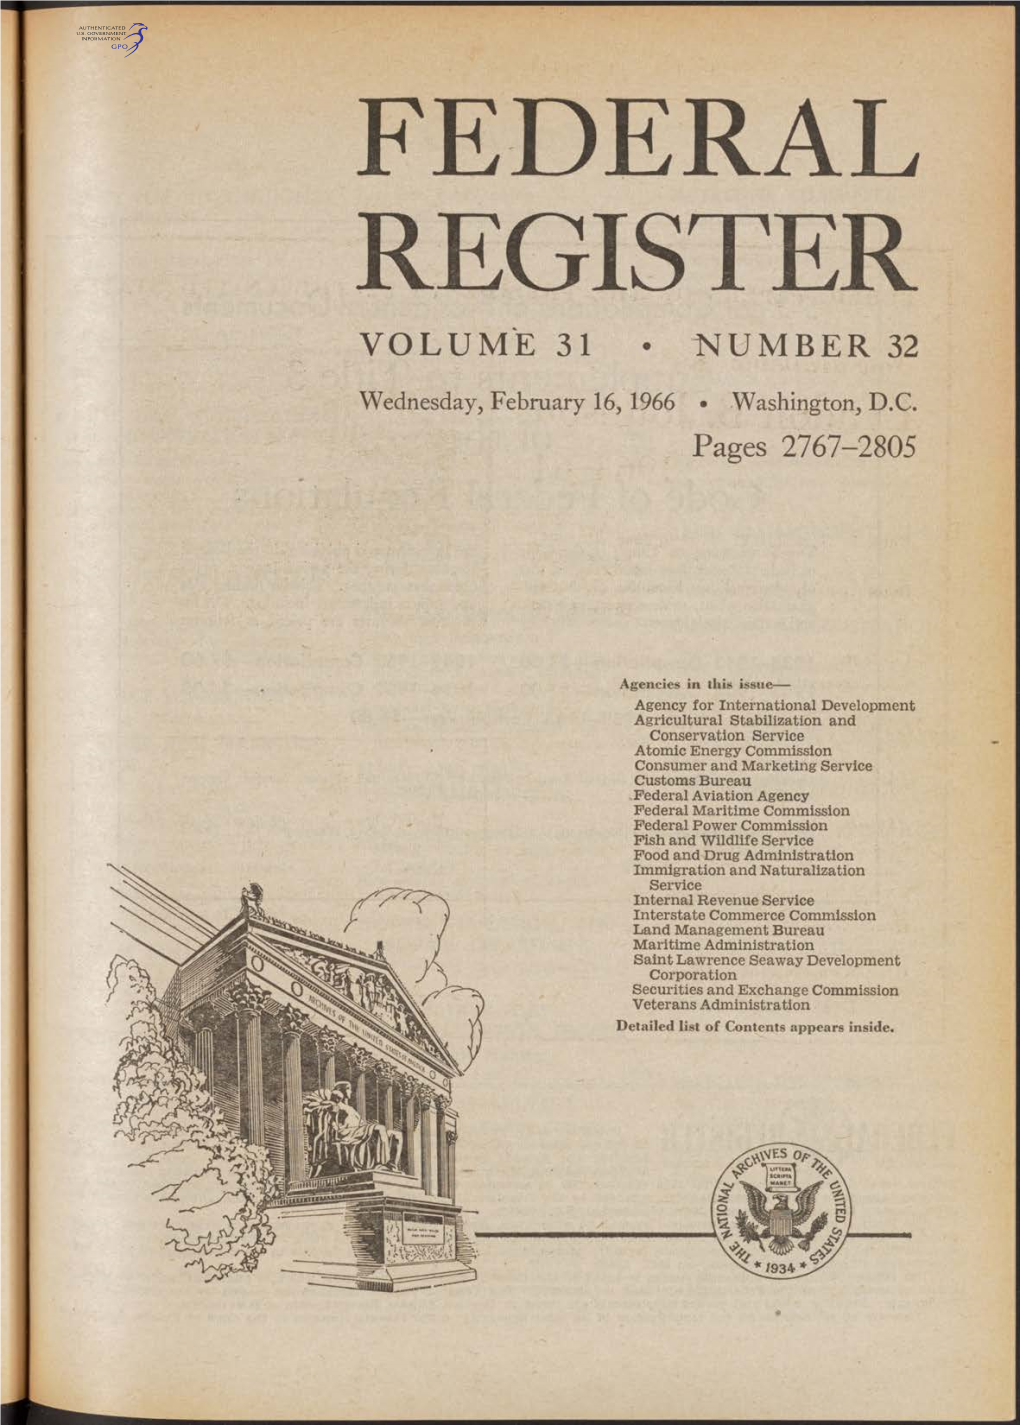 Federal Register Volume 31 • Number 32